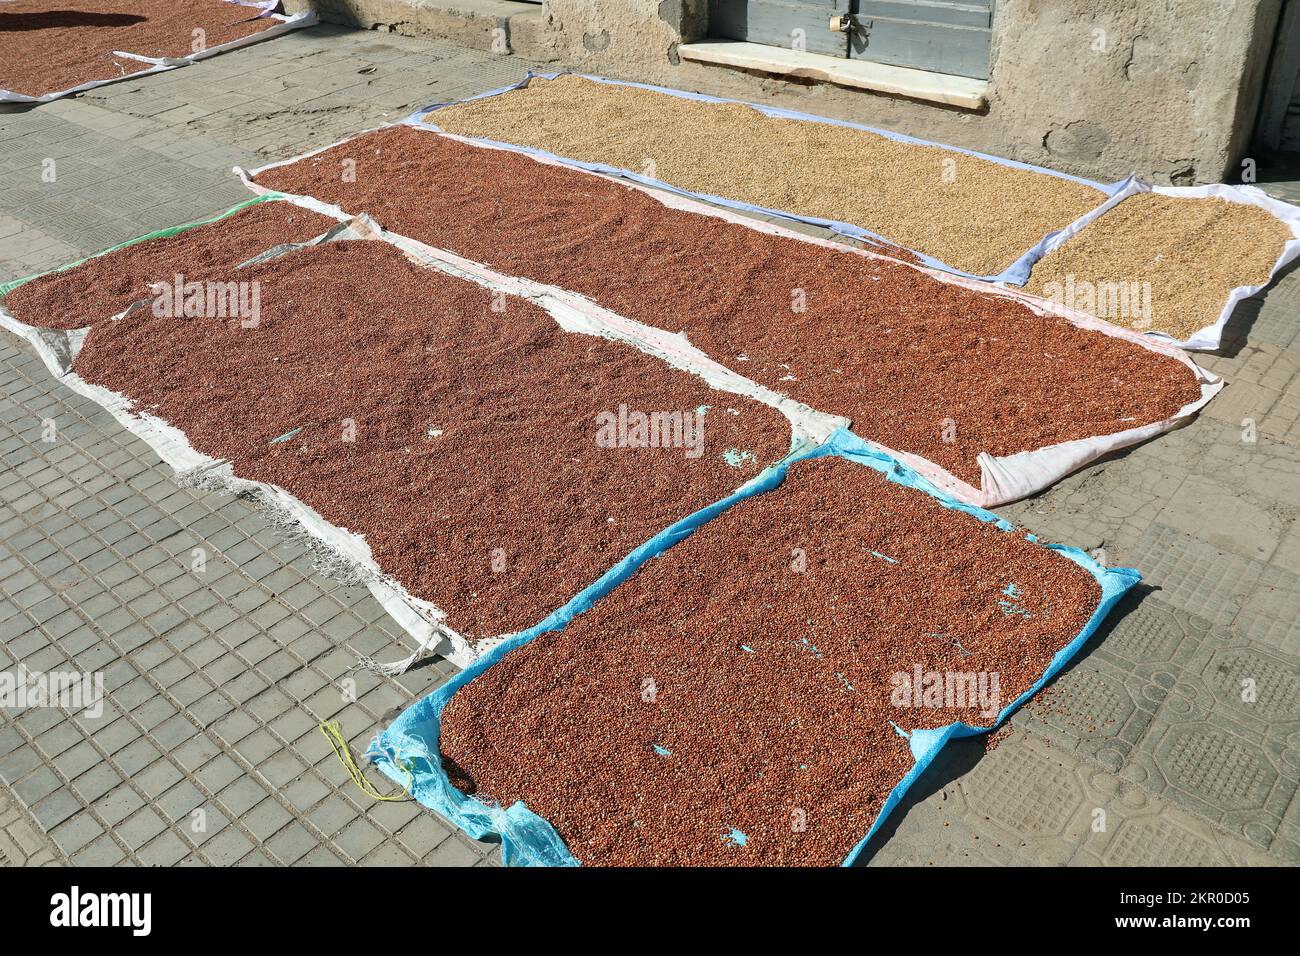 Semillas de teff que se utilizan para hacer secar injera en el pavimento de Asmara Foto de stock